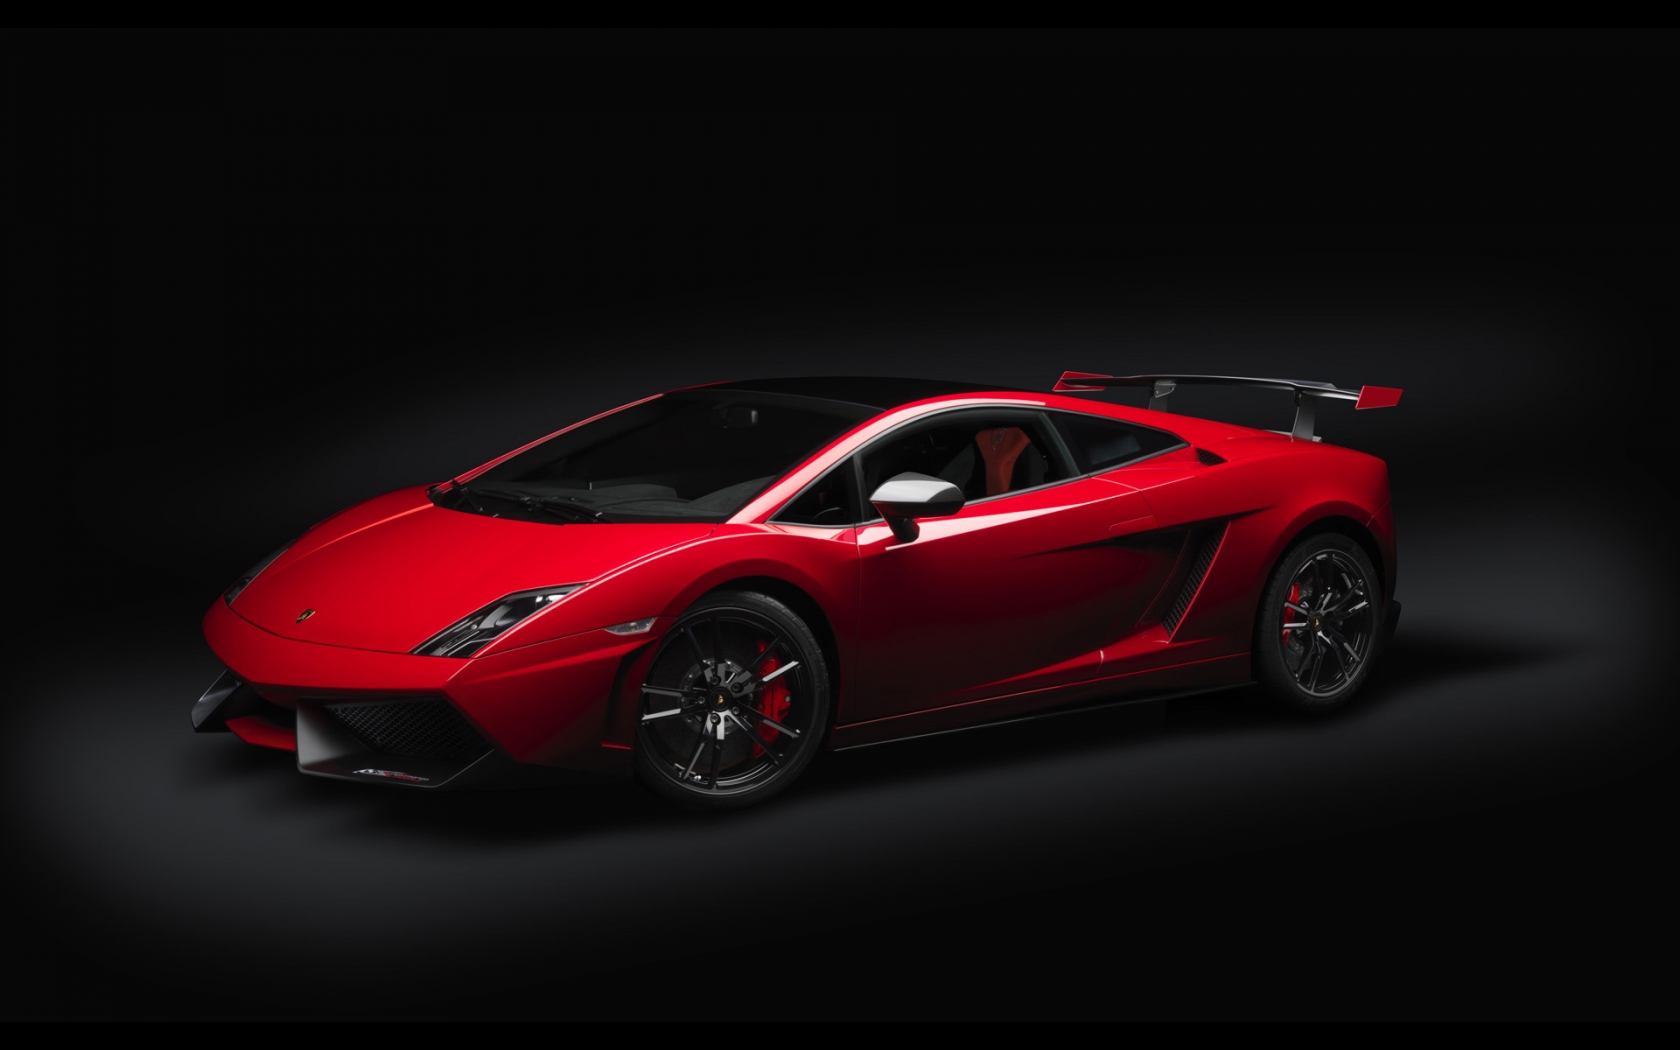 2012 Lamborghini Gallardo LP 570 for 1680 x 1050 widescreen resolution